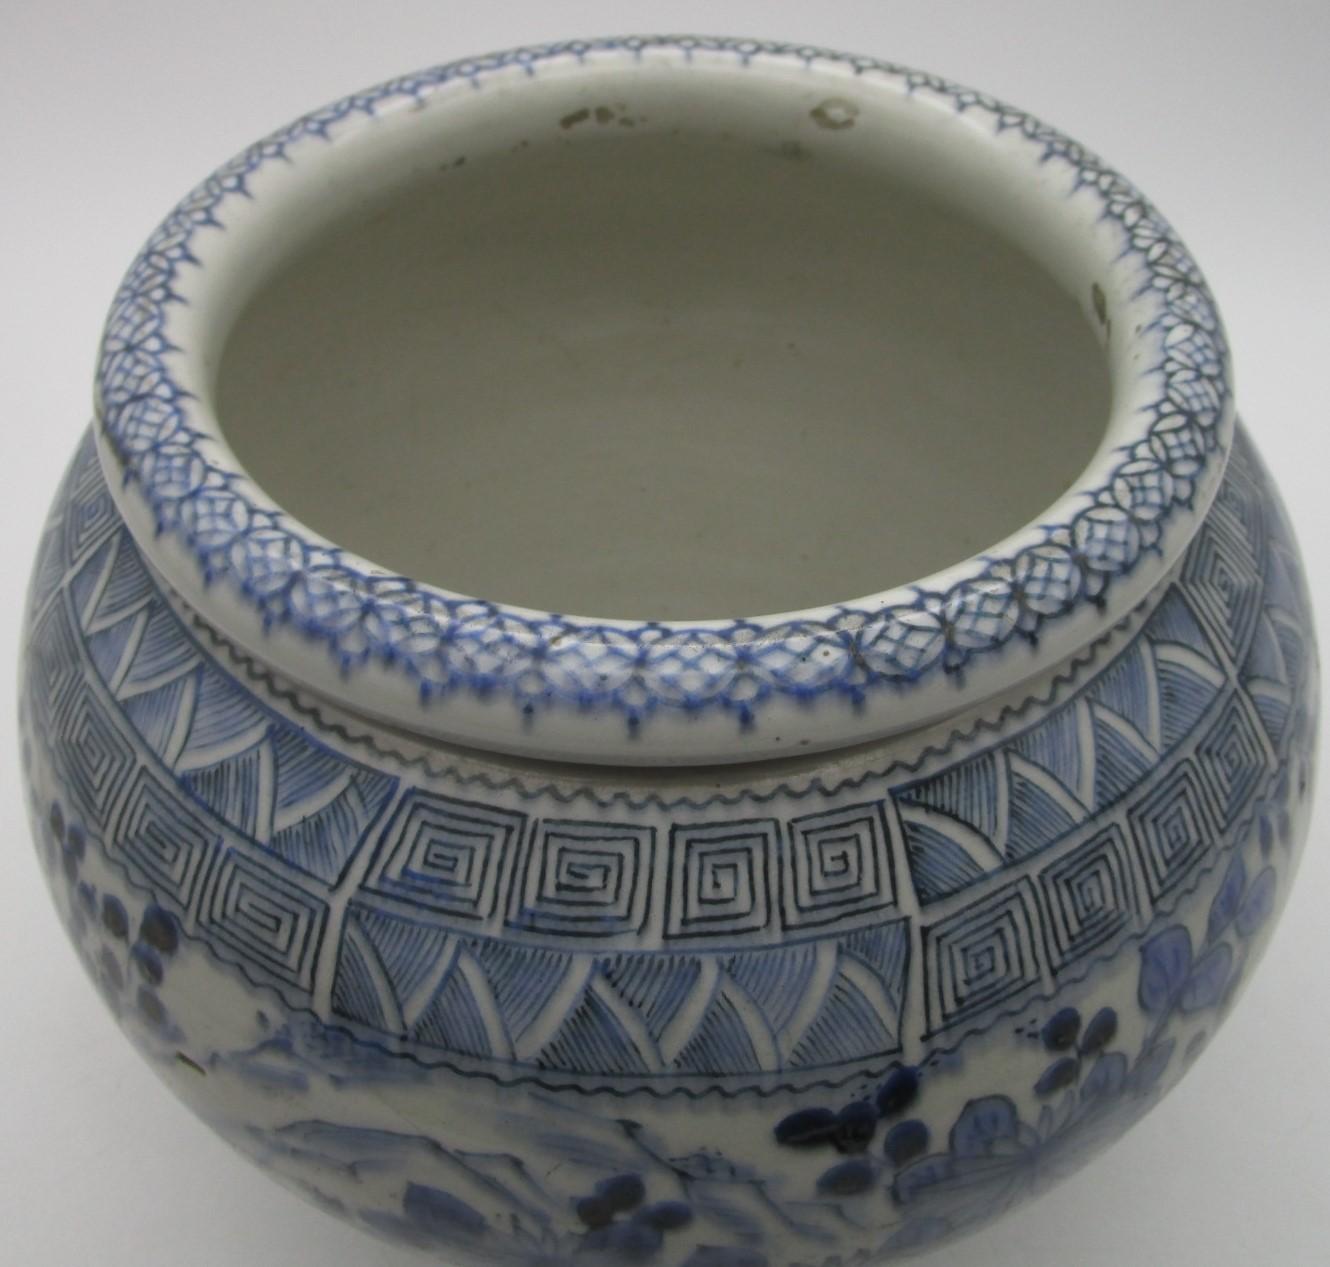 Vase en porcelaine japonaise vintage Arita en bleu sous glaçure de la période Showa (1926-1989). La forme est étonnante : des chrysanthèmes complexes décorent le corps et sont agréablement contrastés par des motifs géométriques complexes et